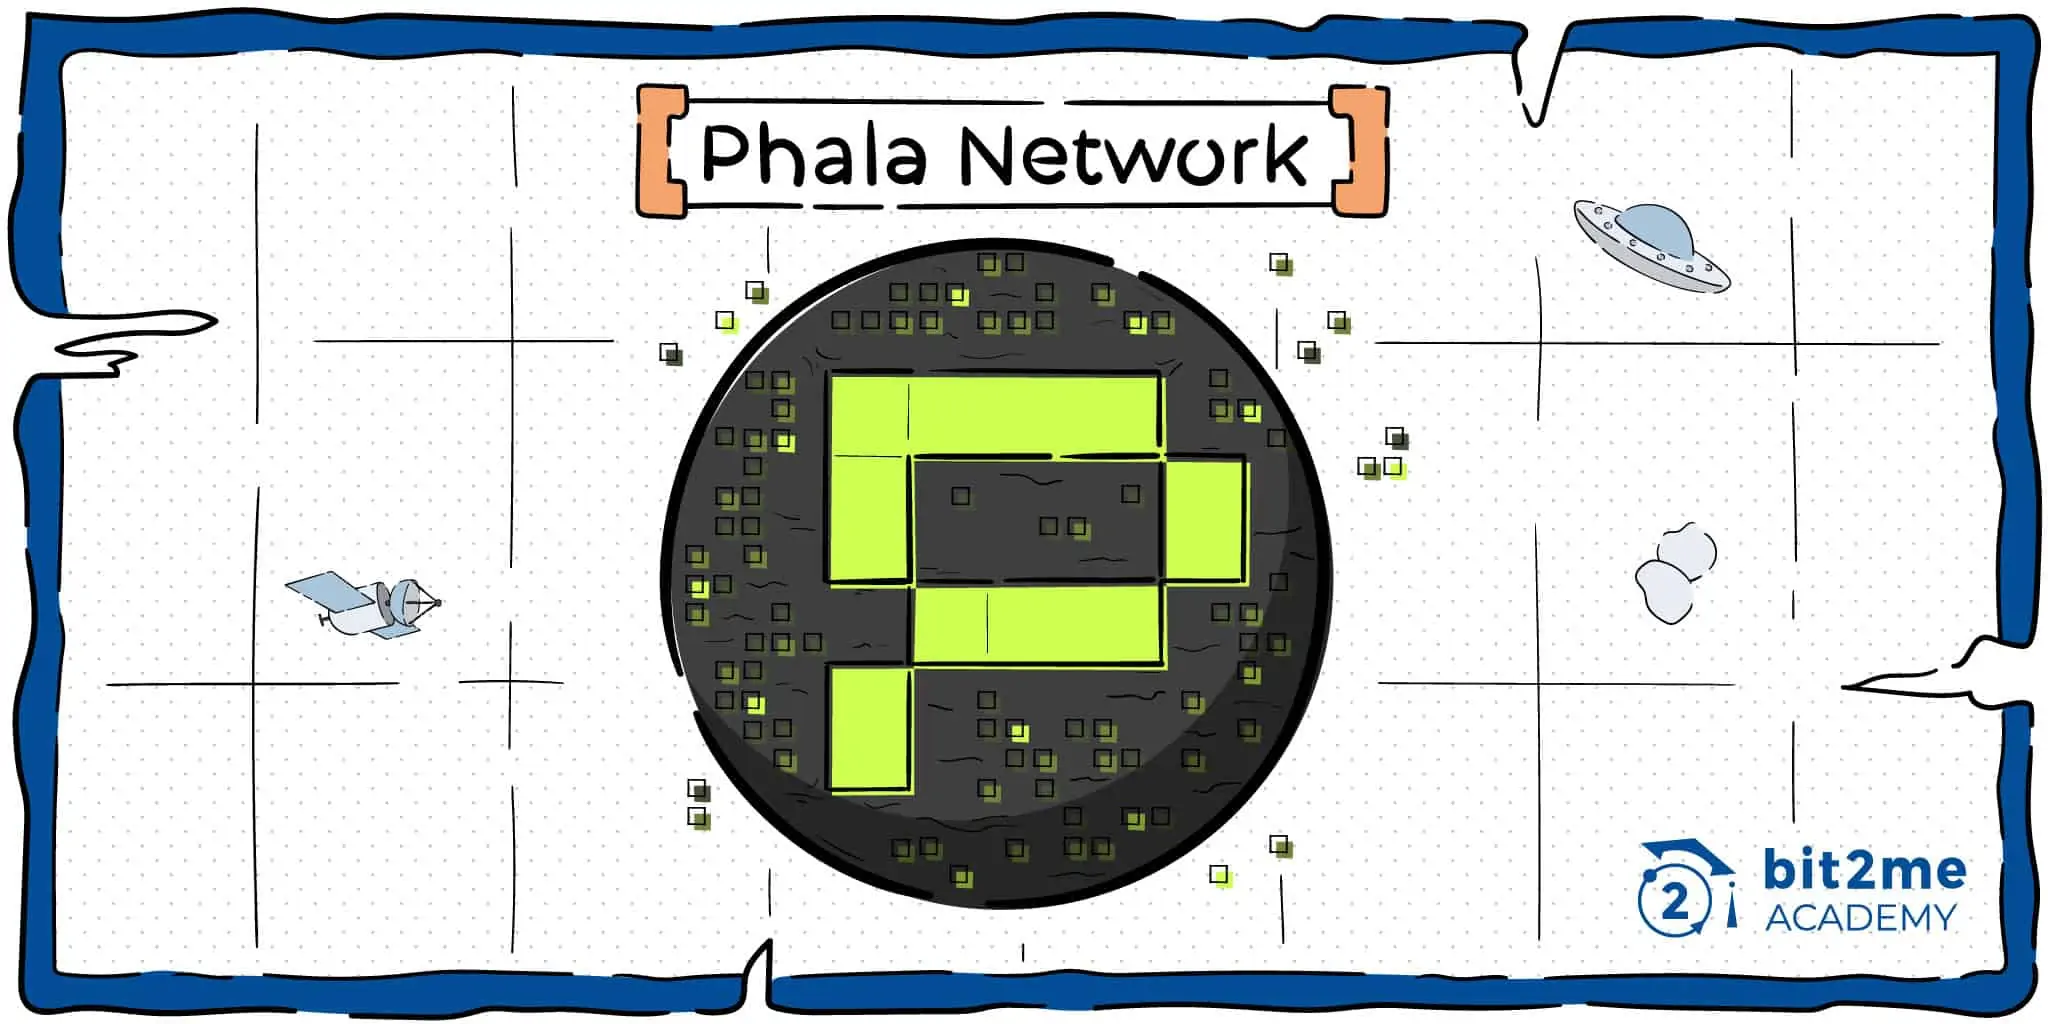 Phala